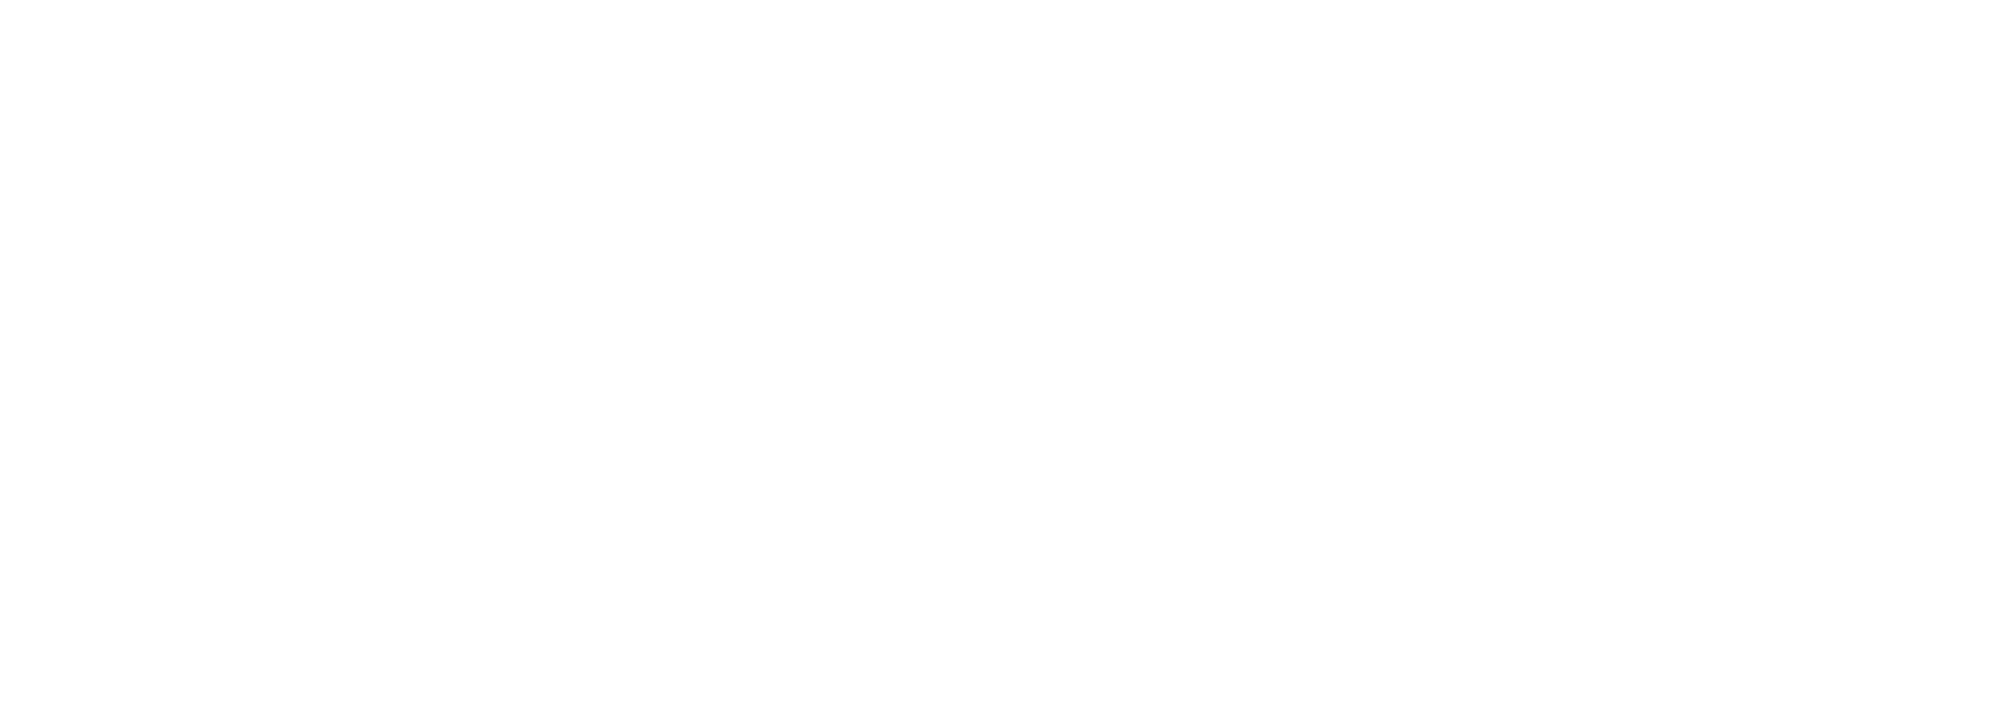 Noyers house